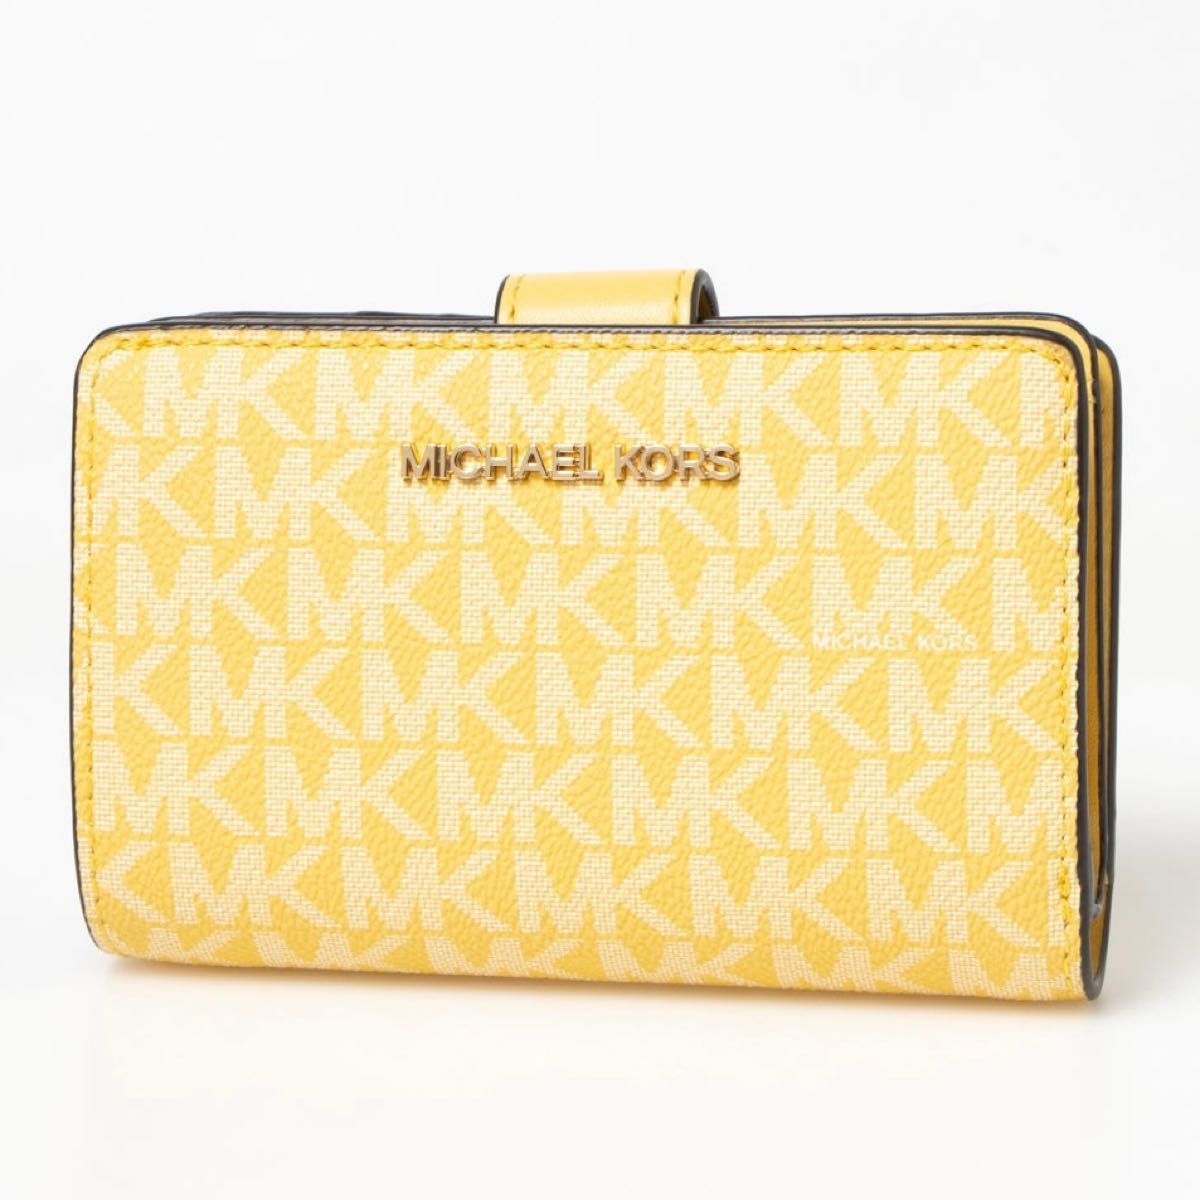 【新品】 MICHAEL KORS マイケルコース 折り財布 イエロー 黄色 二つ折り財布 財布